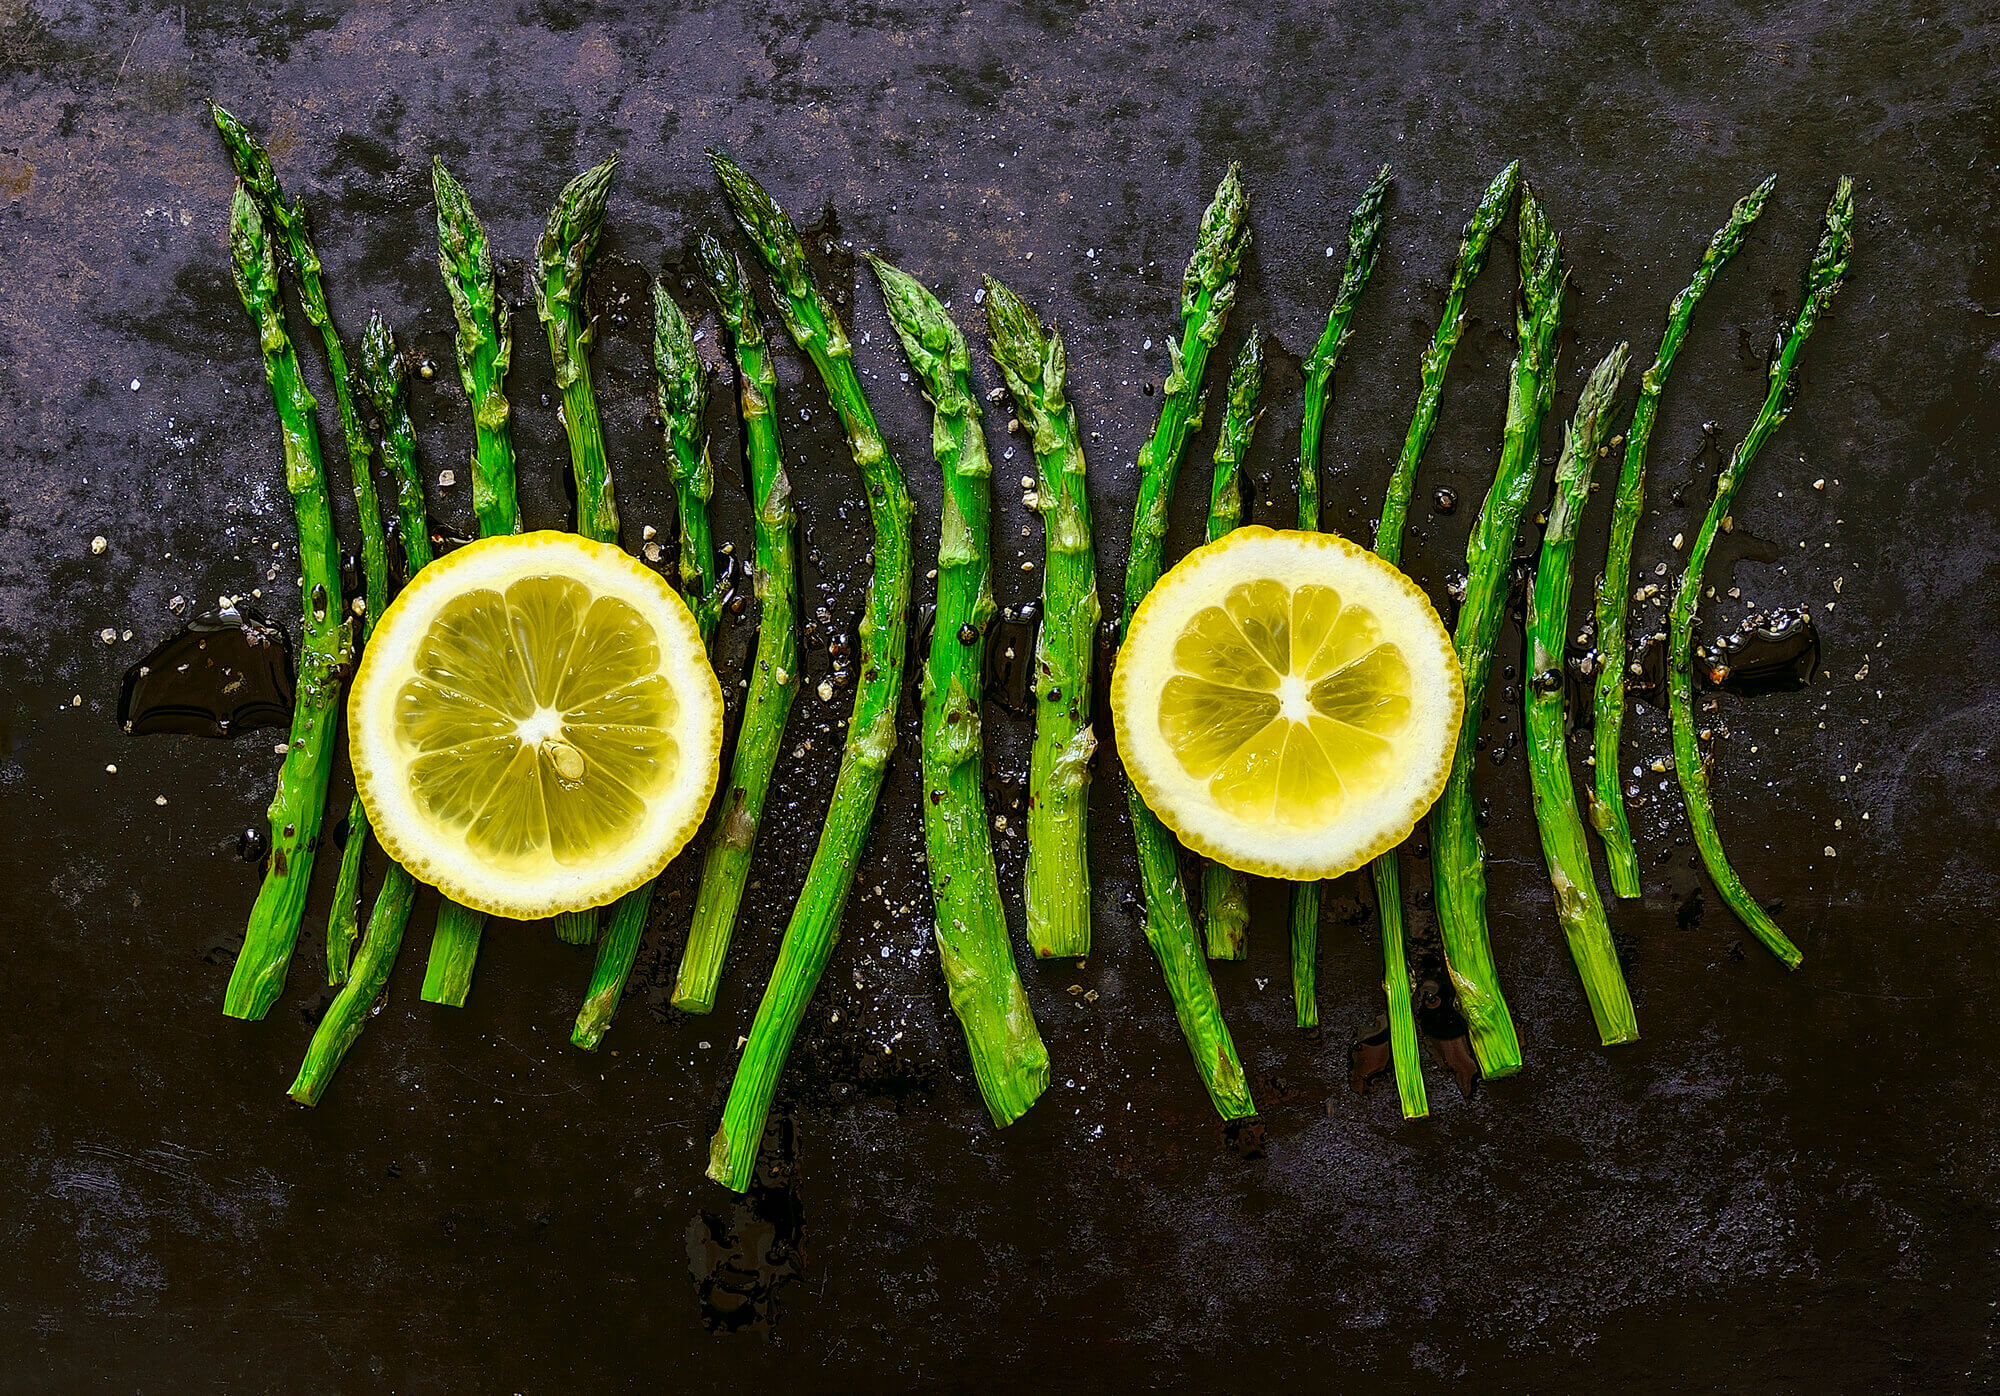 Roasted Asparagus with Garlic-Lemon Sauce